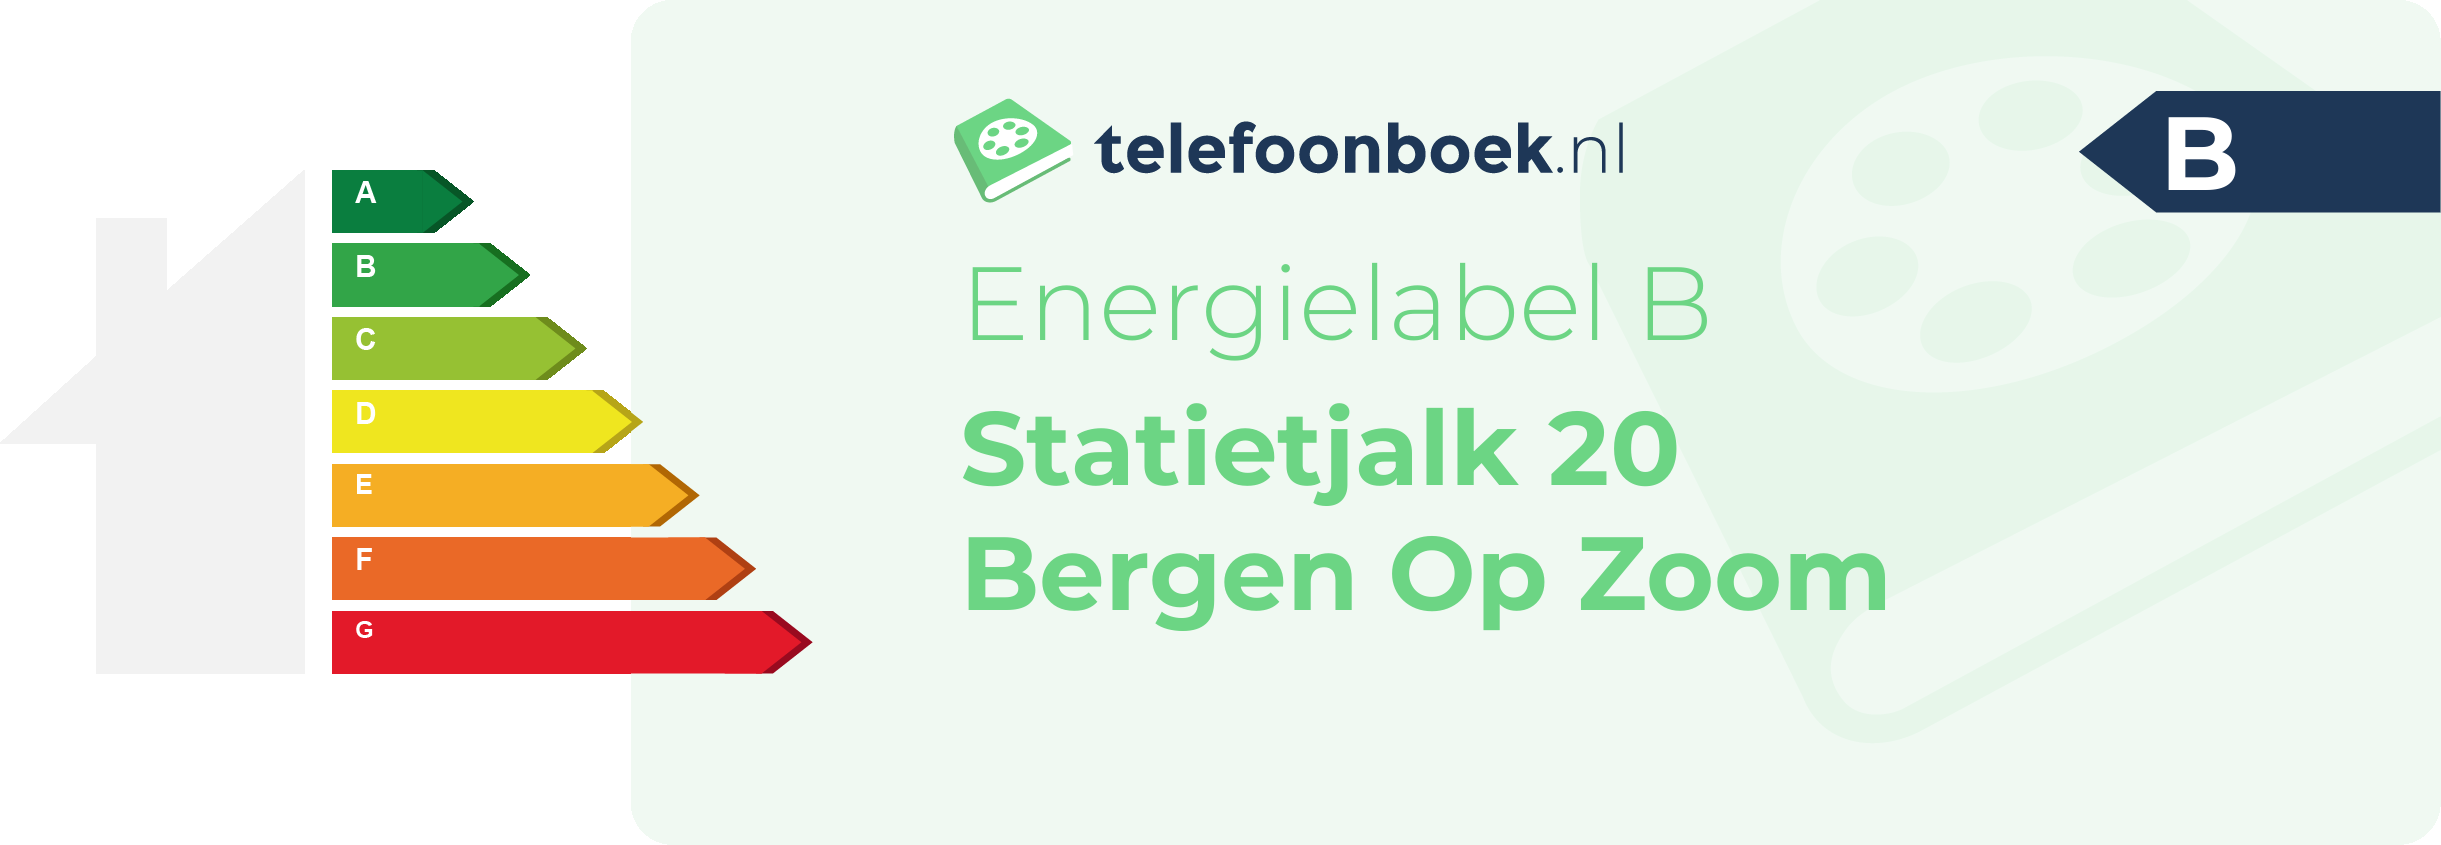 Energielabel Statietjalk 20 Bergen Op Zoom